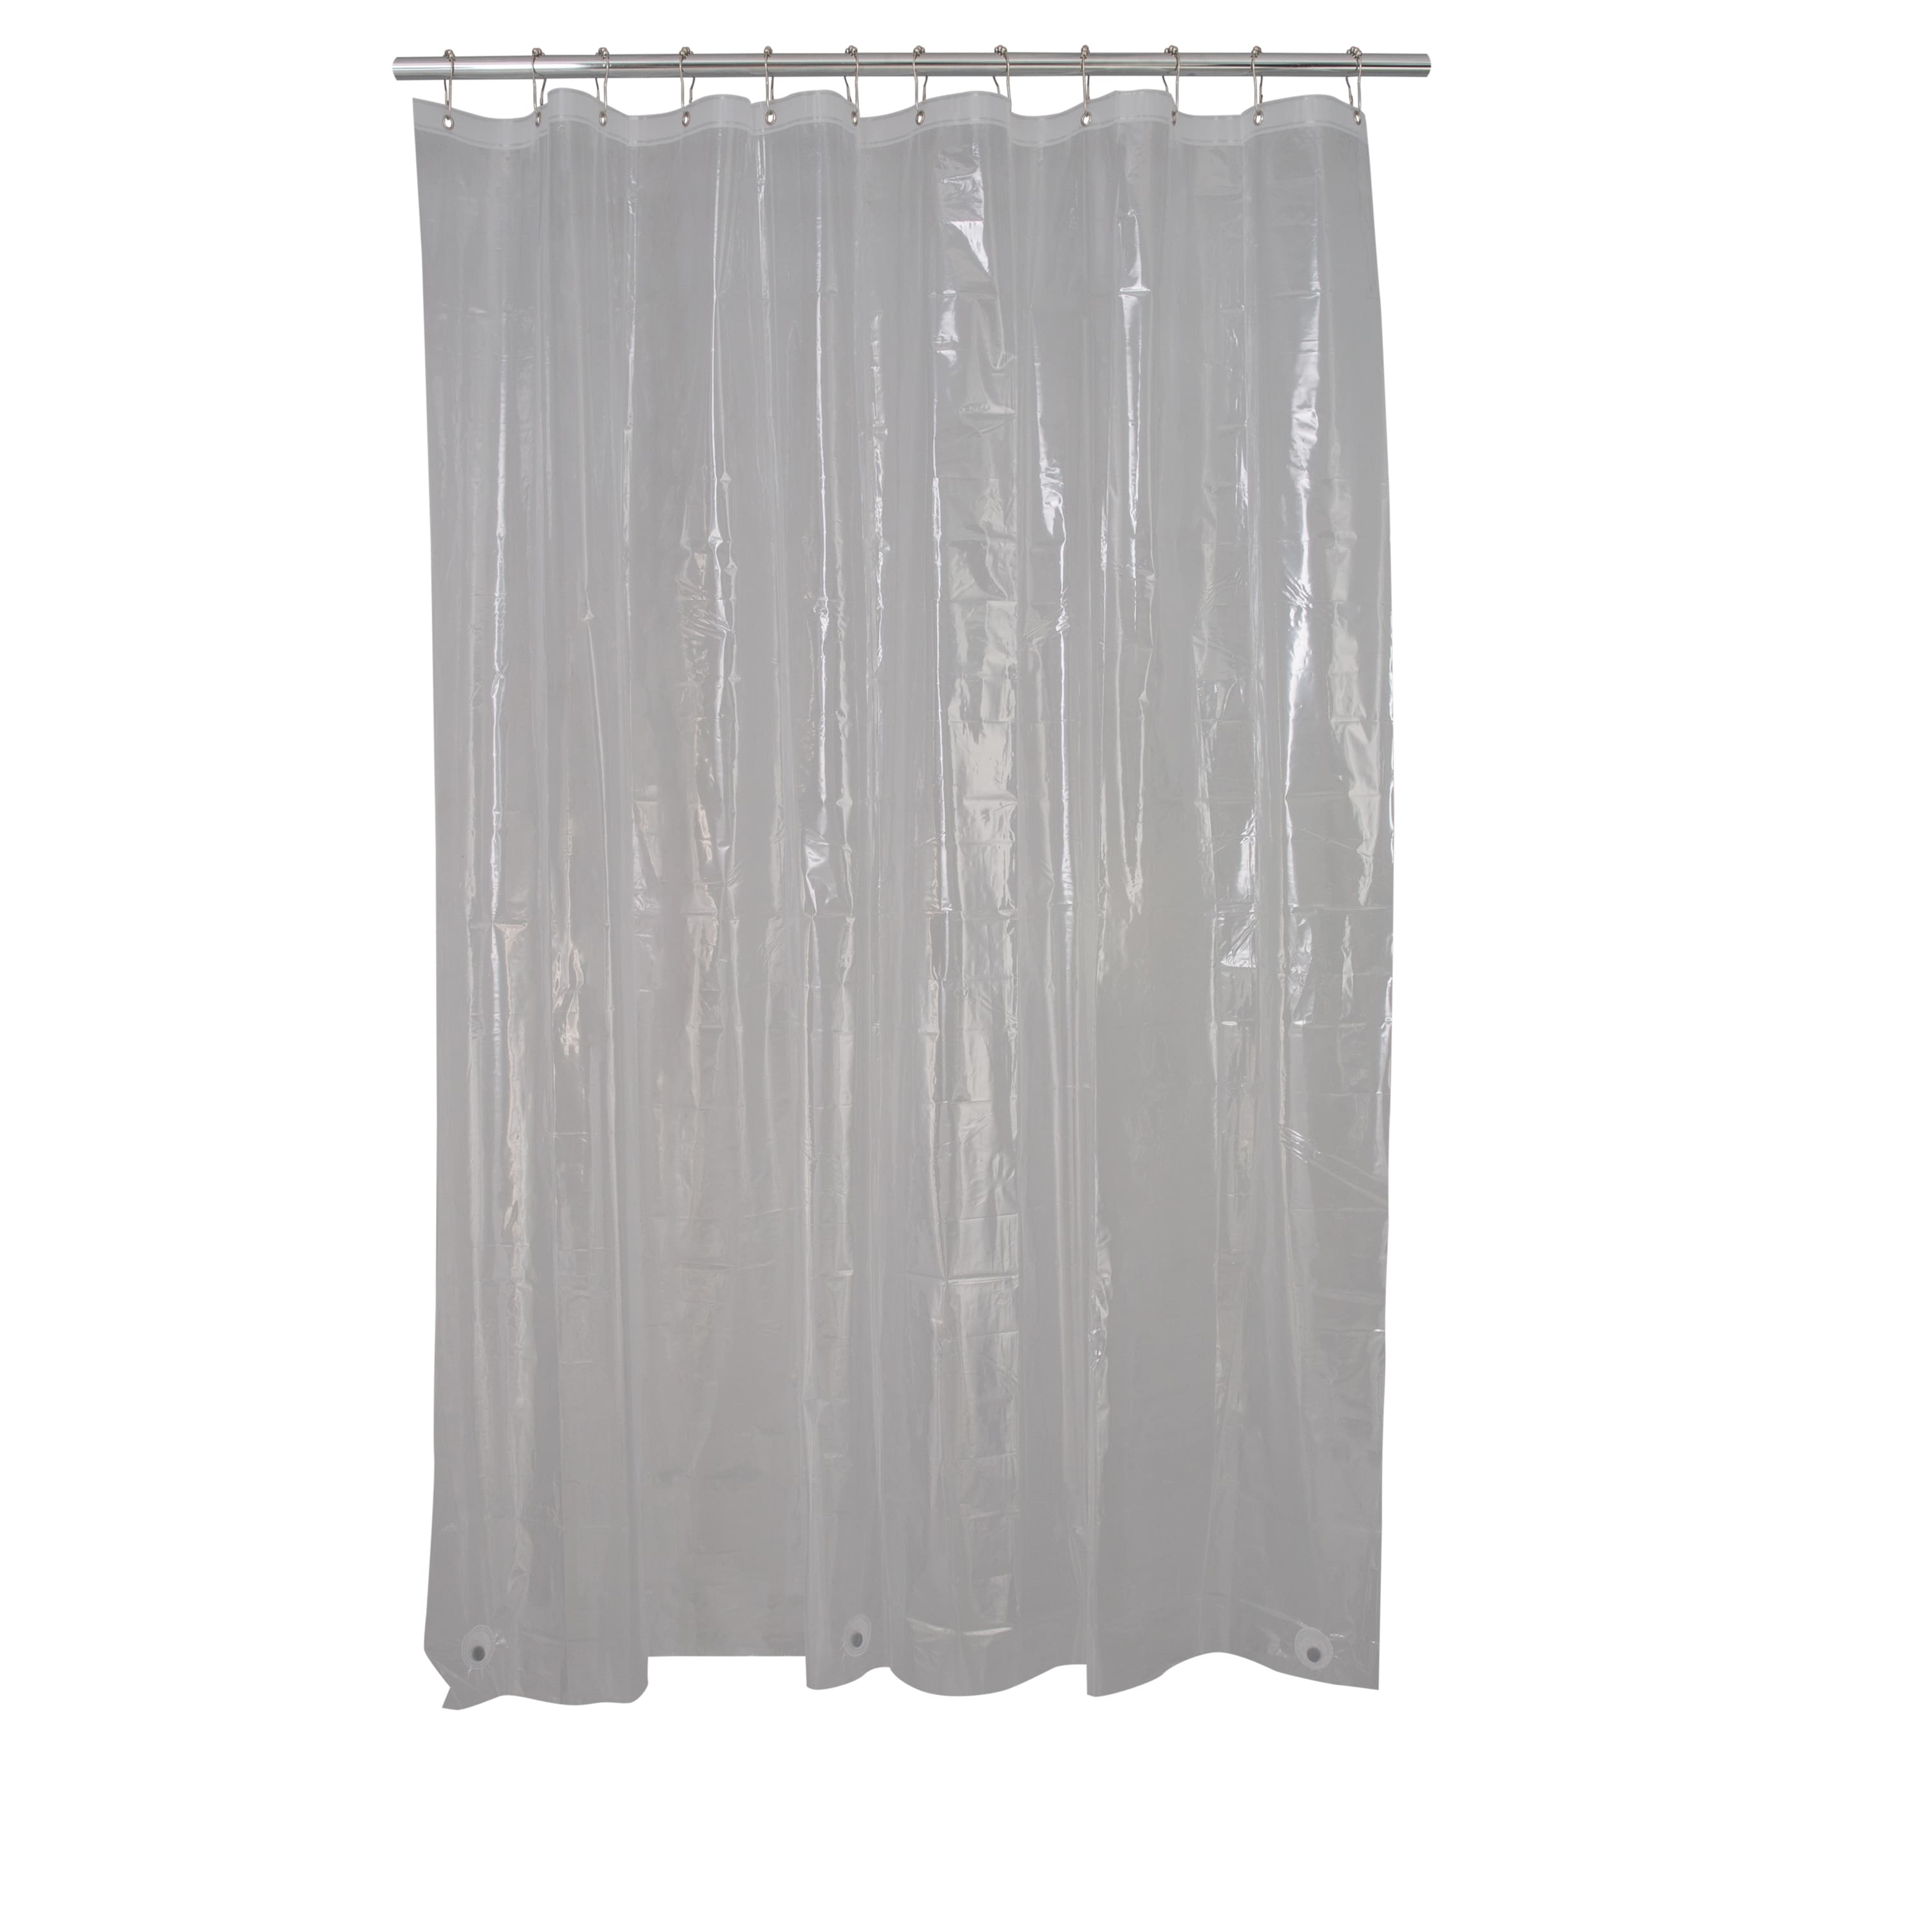 Bath Bliss PEVA Shower Curtain Liner